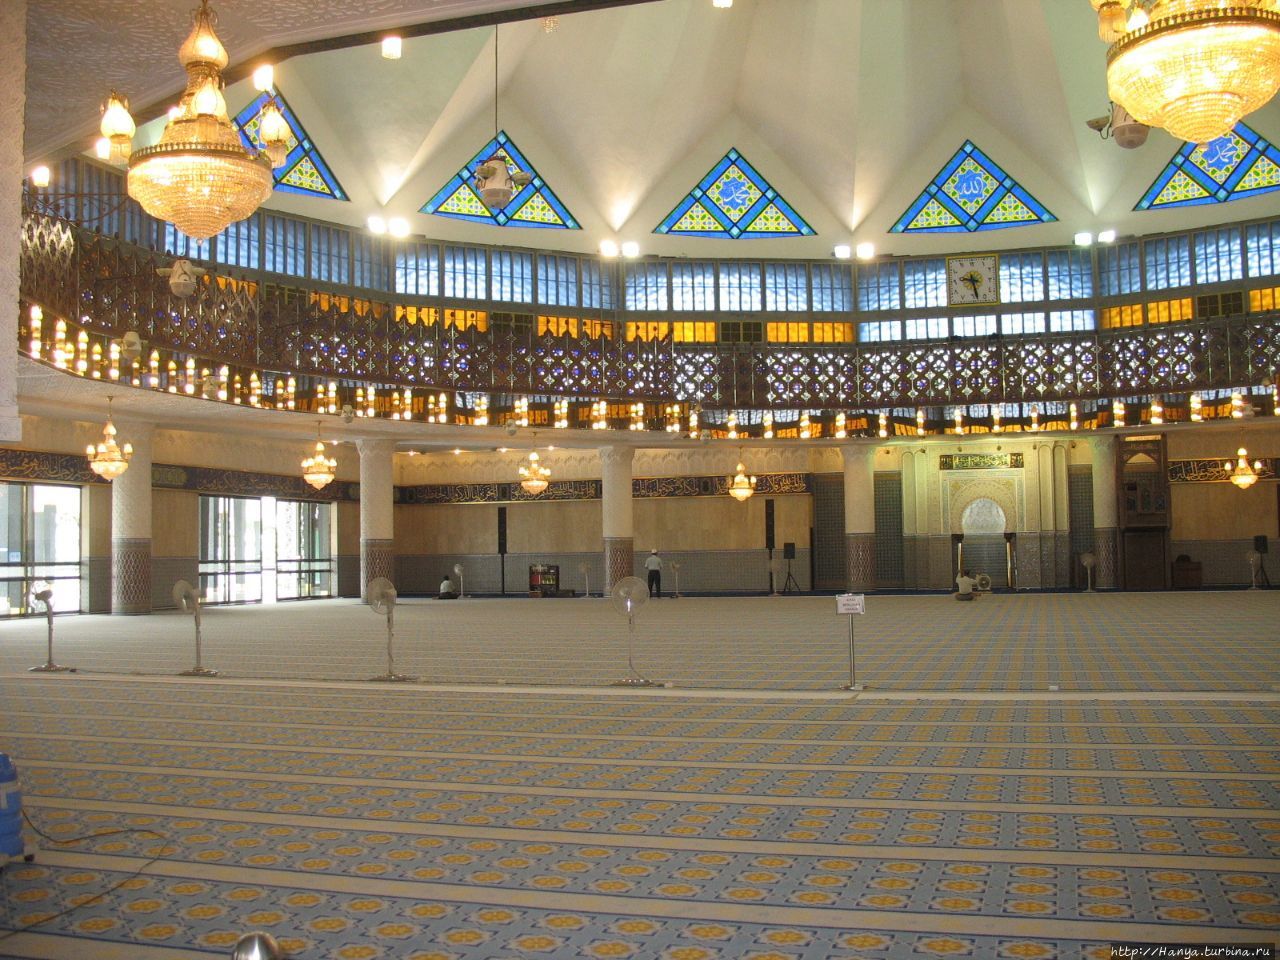 Национальная мечеть (Masjid Negara).Молельный зал